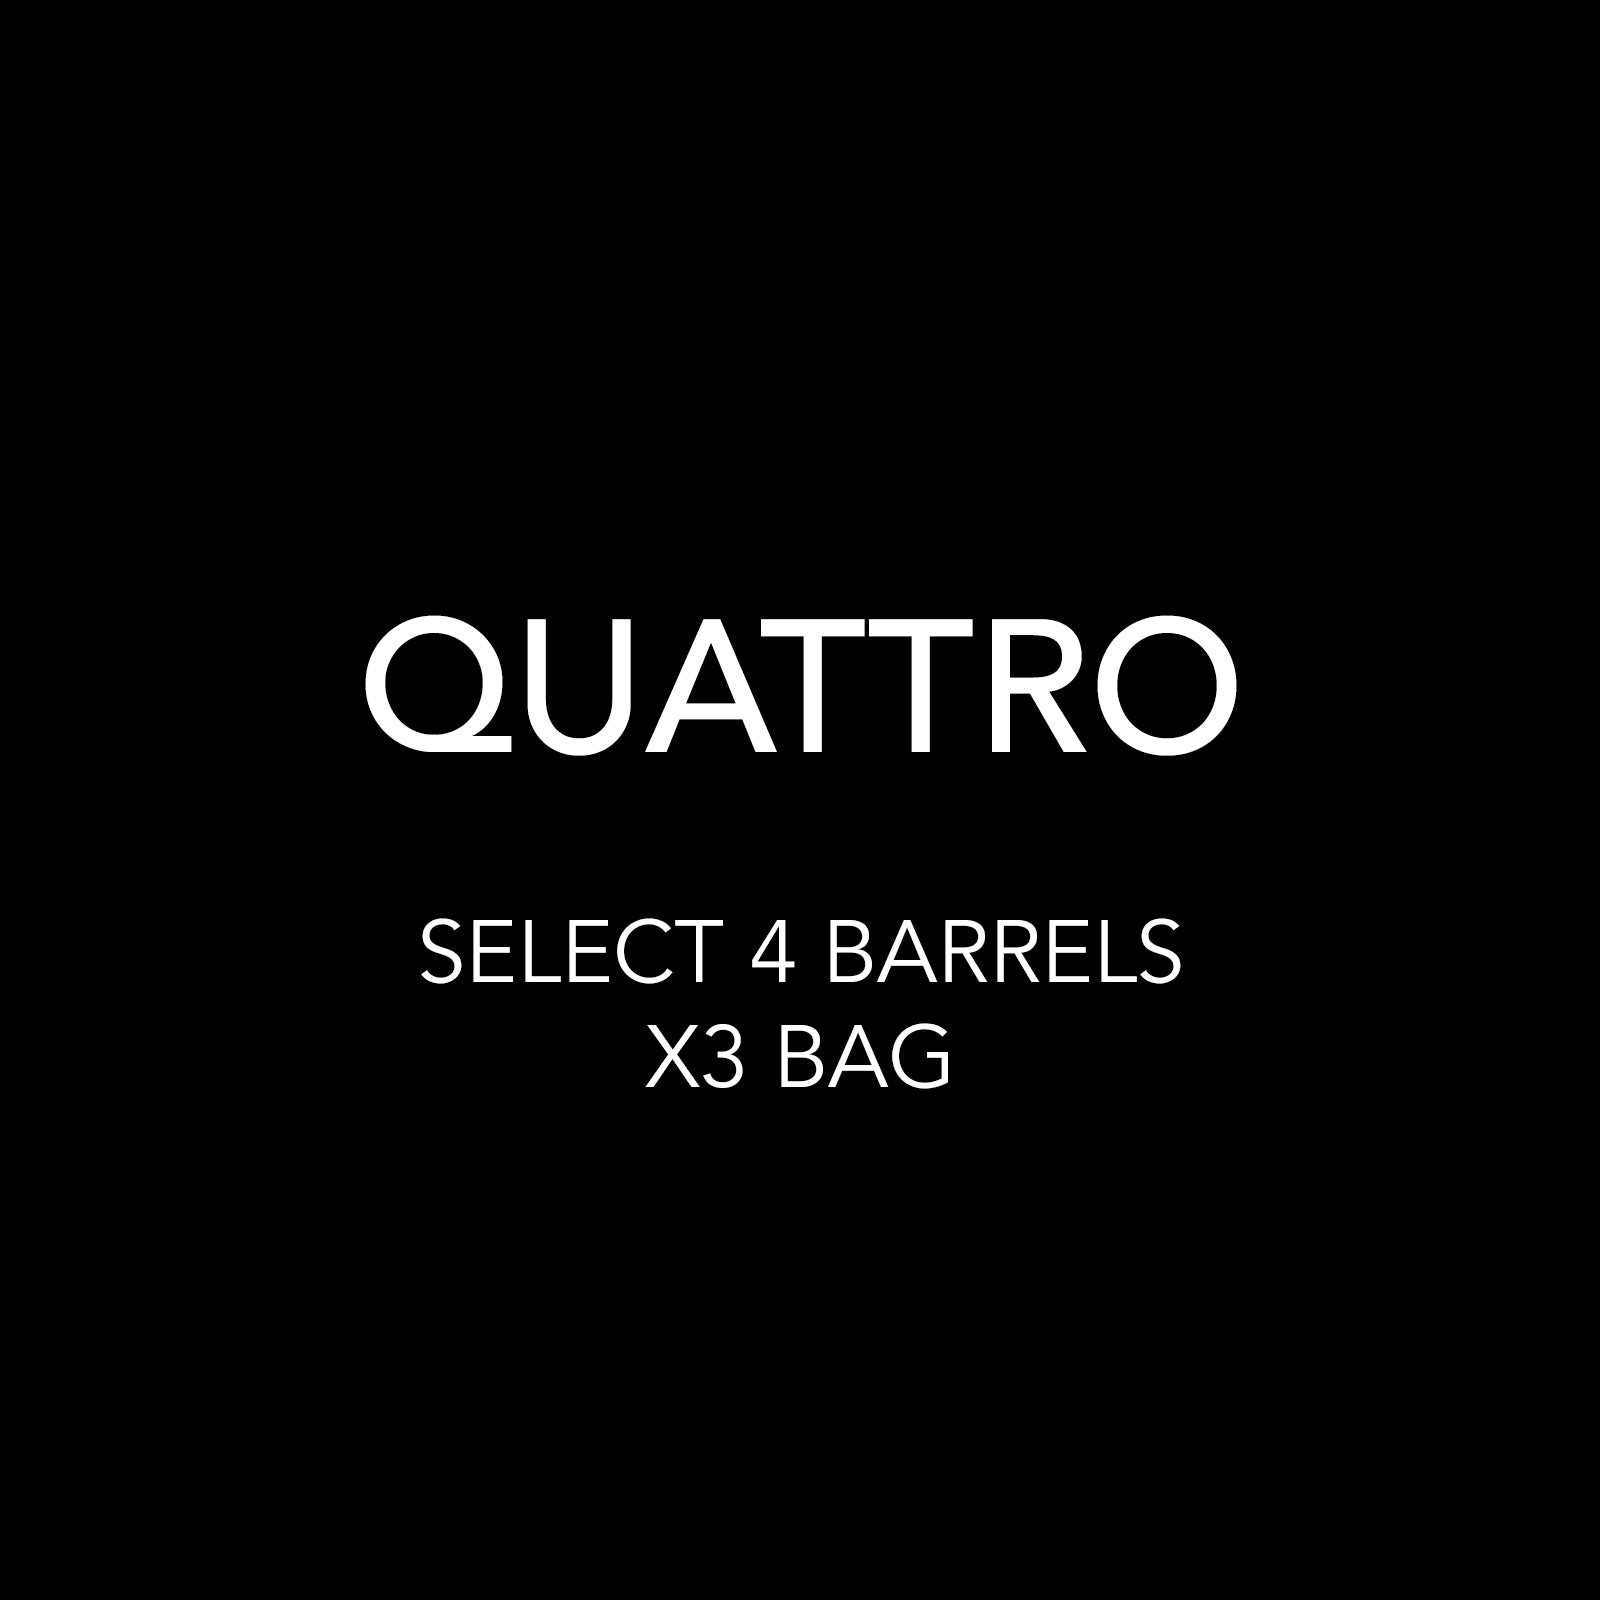 QUATTRO - YOU PICK 4 BARRELS